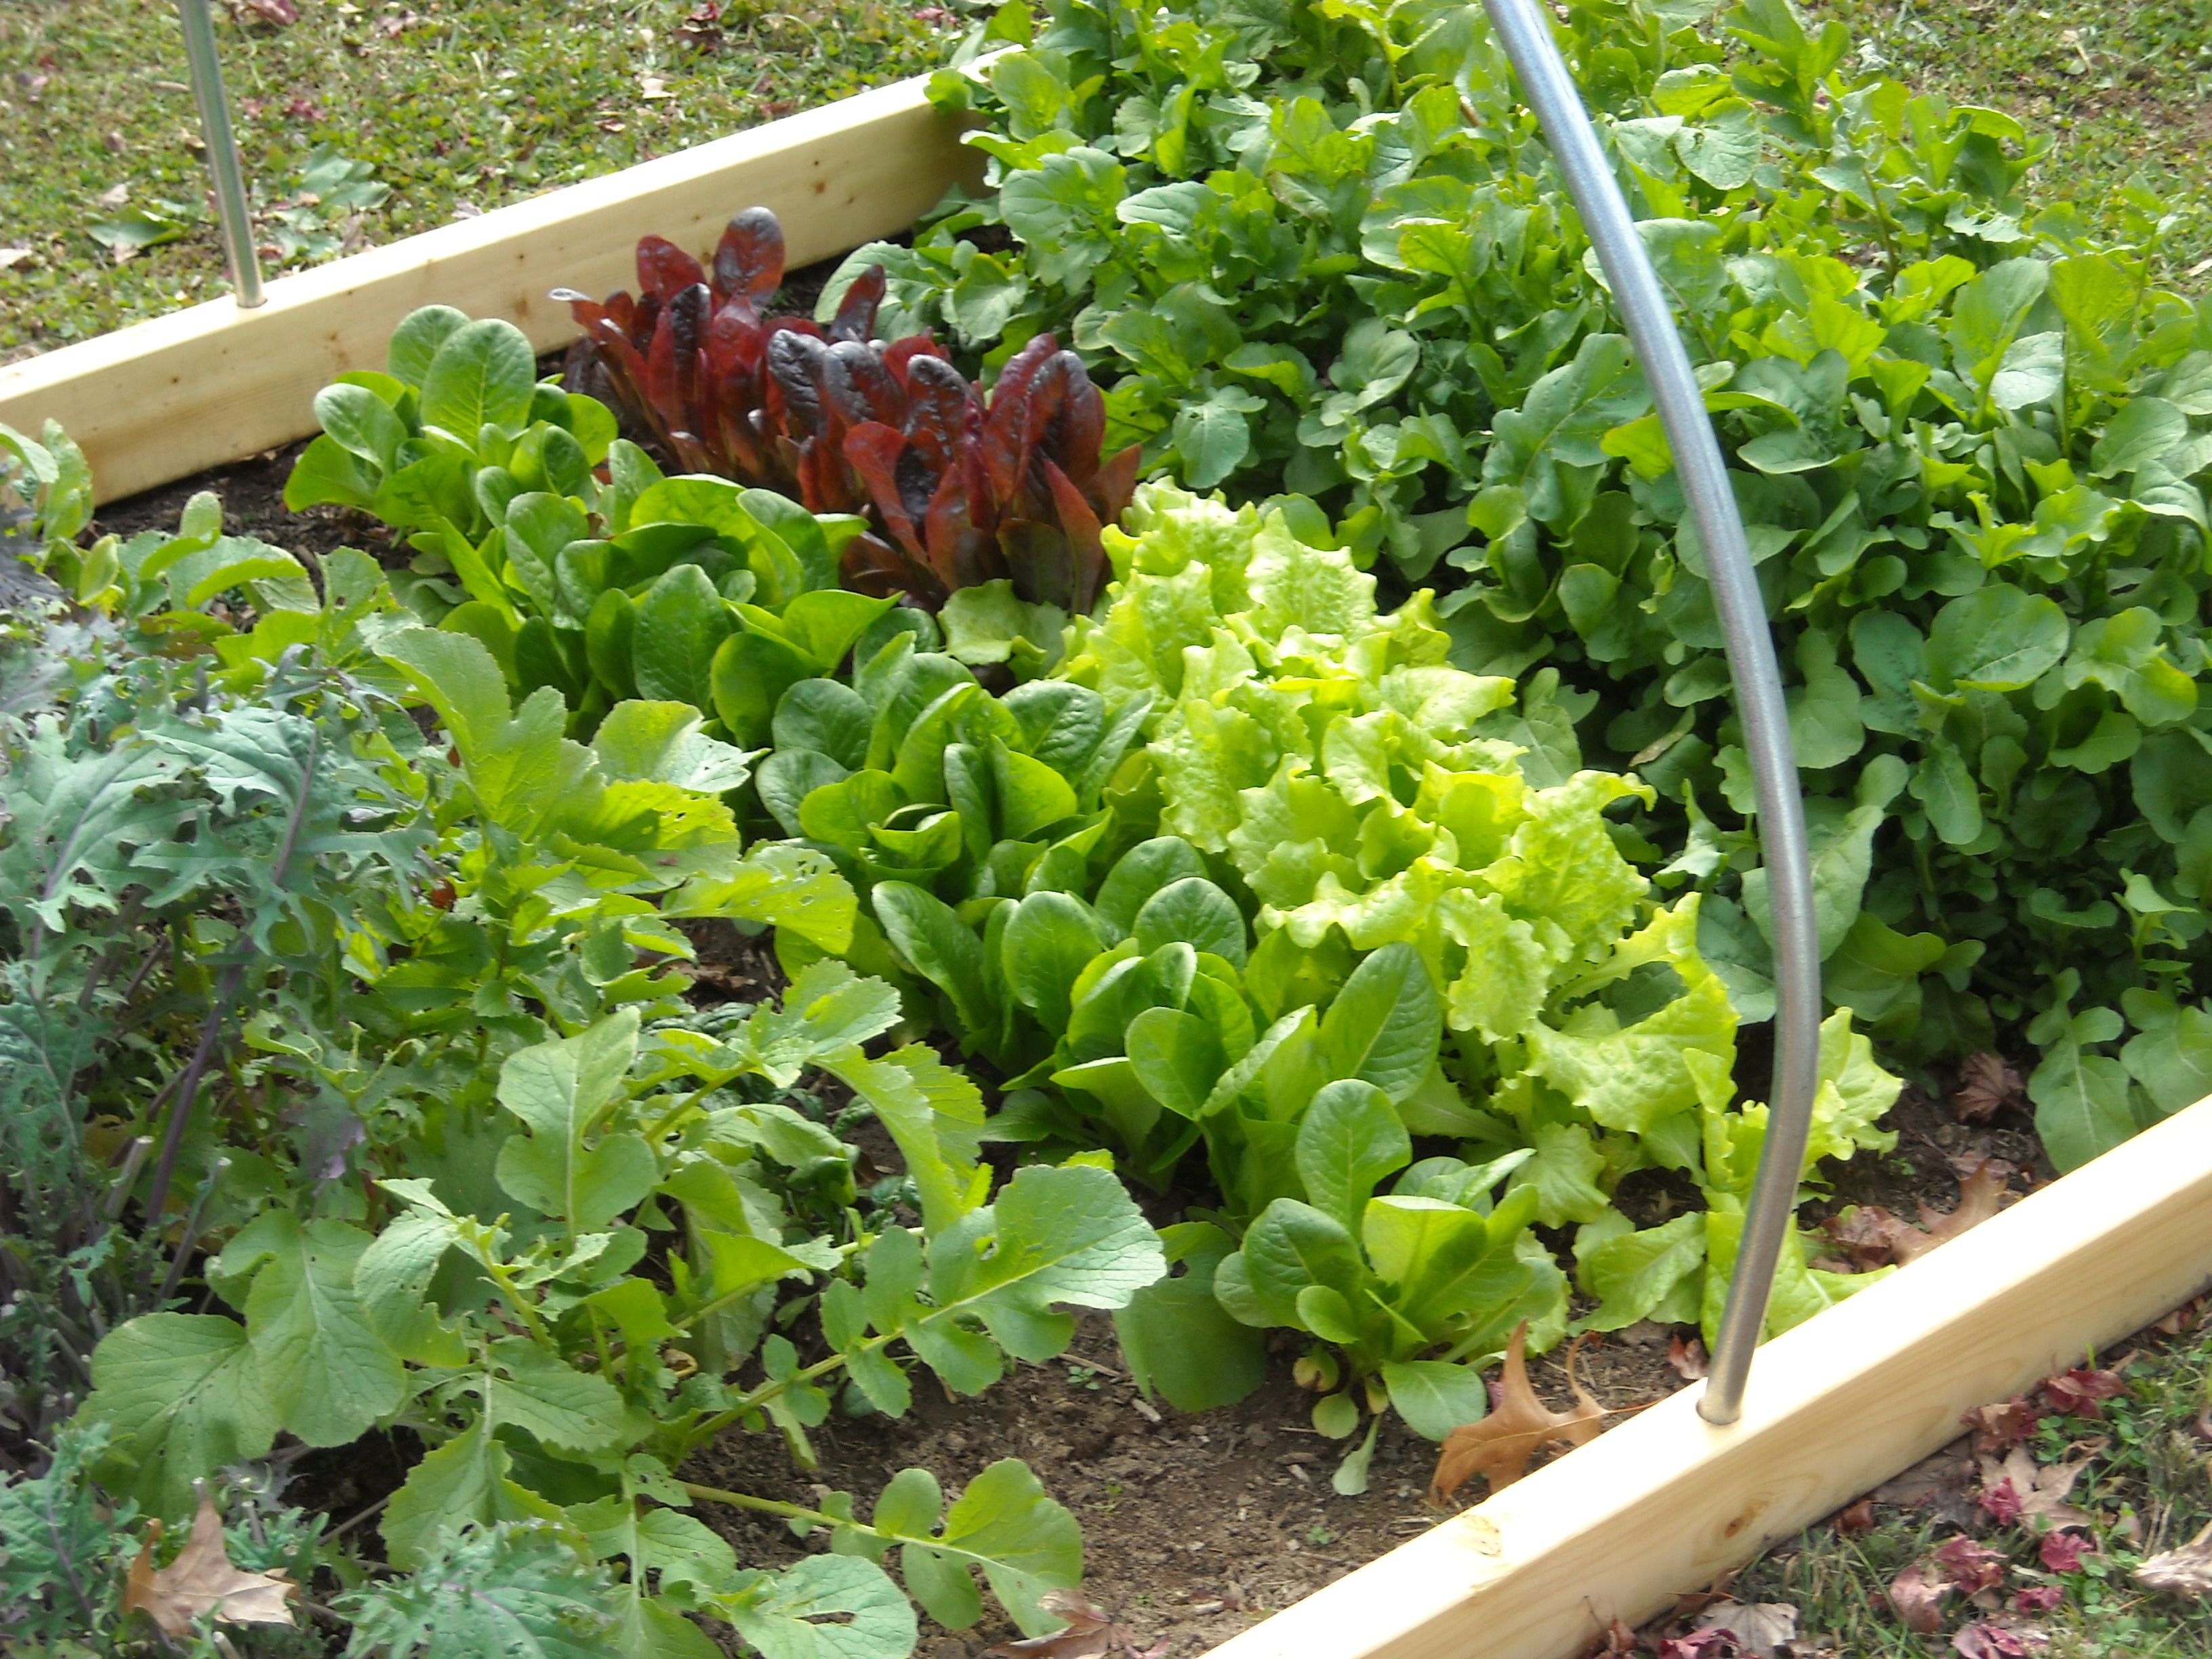 How to start an organic garden?